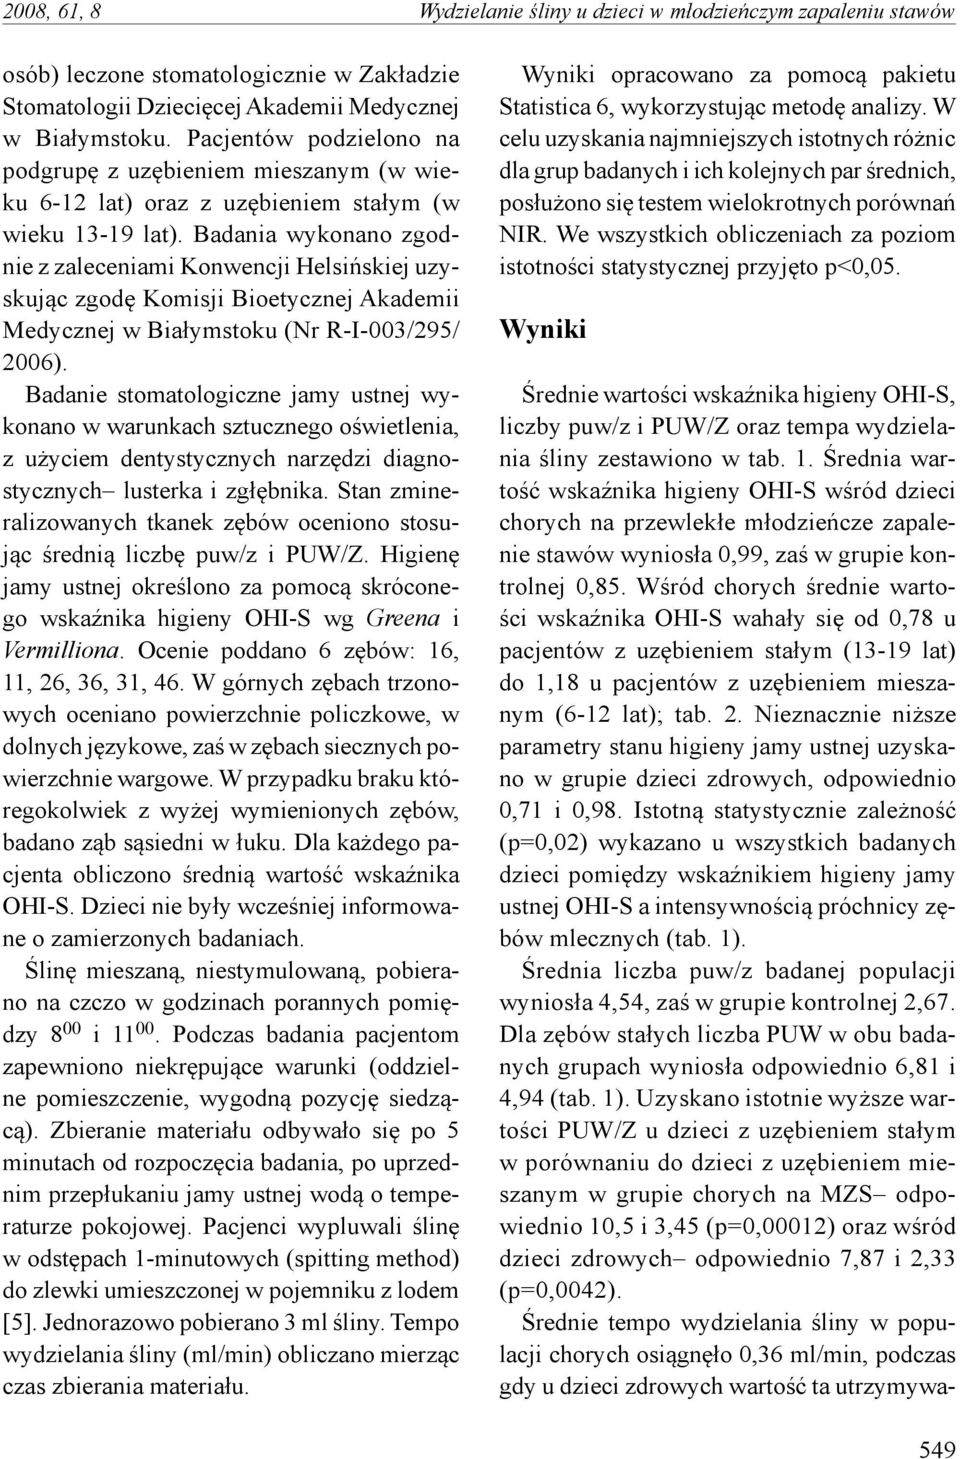 Badania wykonano zgodnie z zaleceniami Konwencji Helsińskiej uzyskując zgodę Komisji Bioetycznej Akademii Medycznej w Białymstoku (Nr R-I-003/295/ 2006).